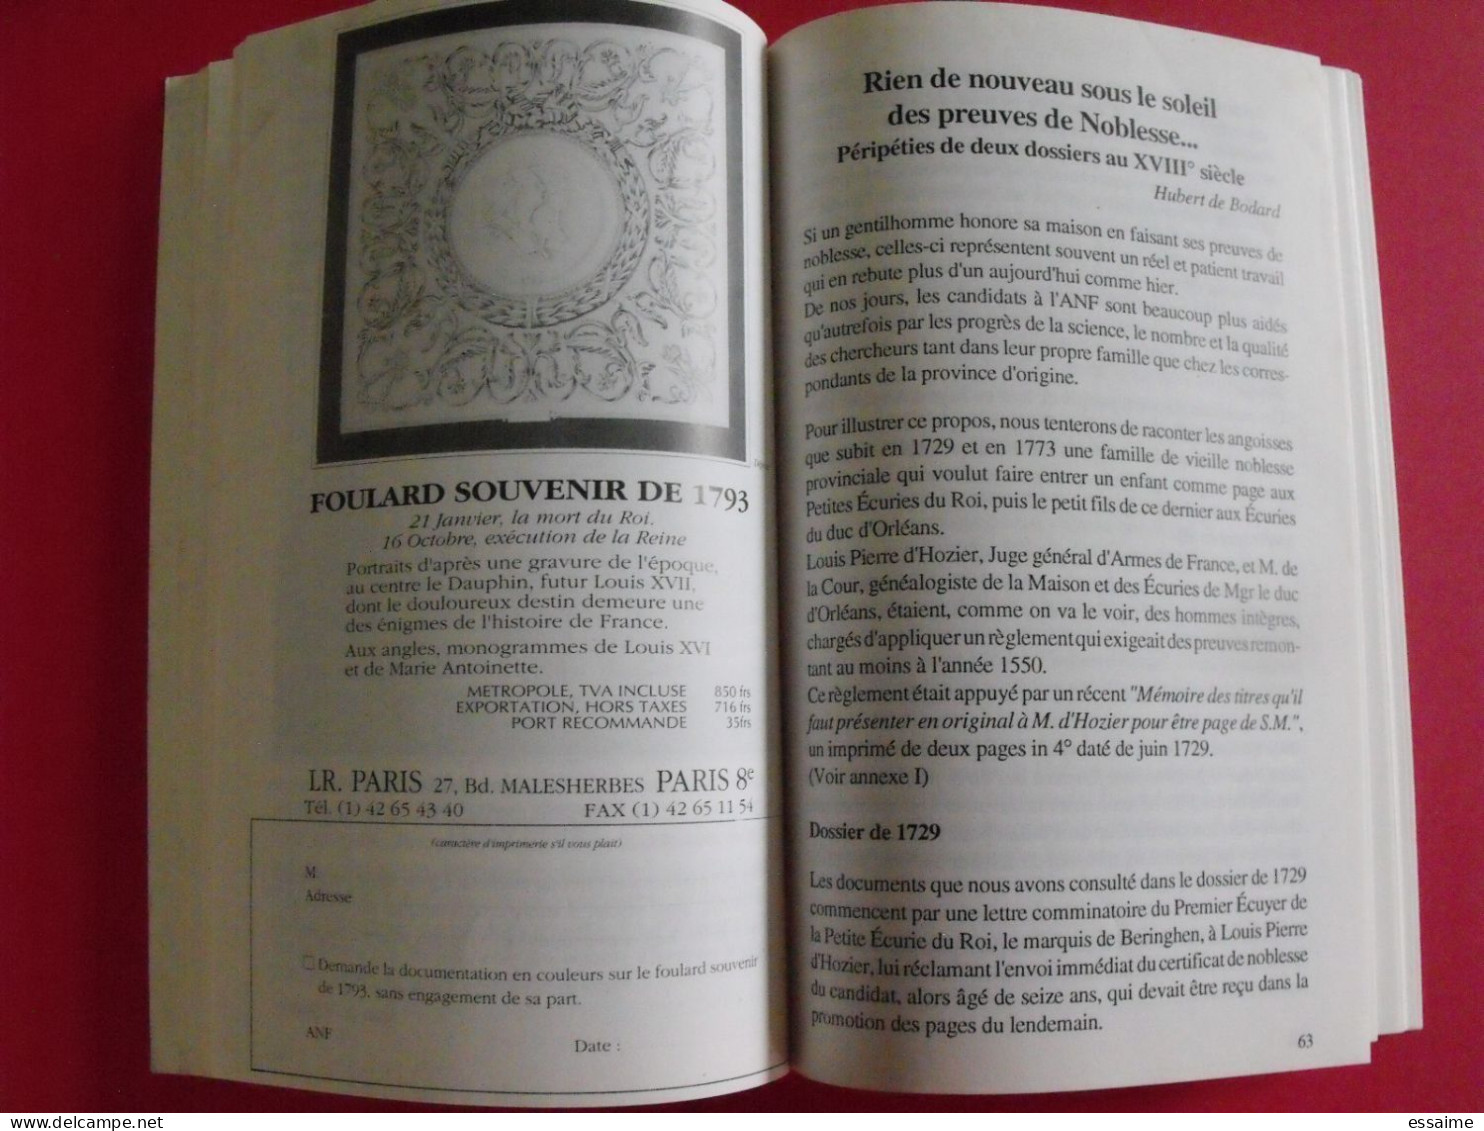 bulletin de l'association d'entraide de la noblesse française n° 218 janvier 1994. ANF